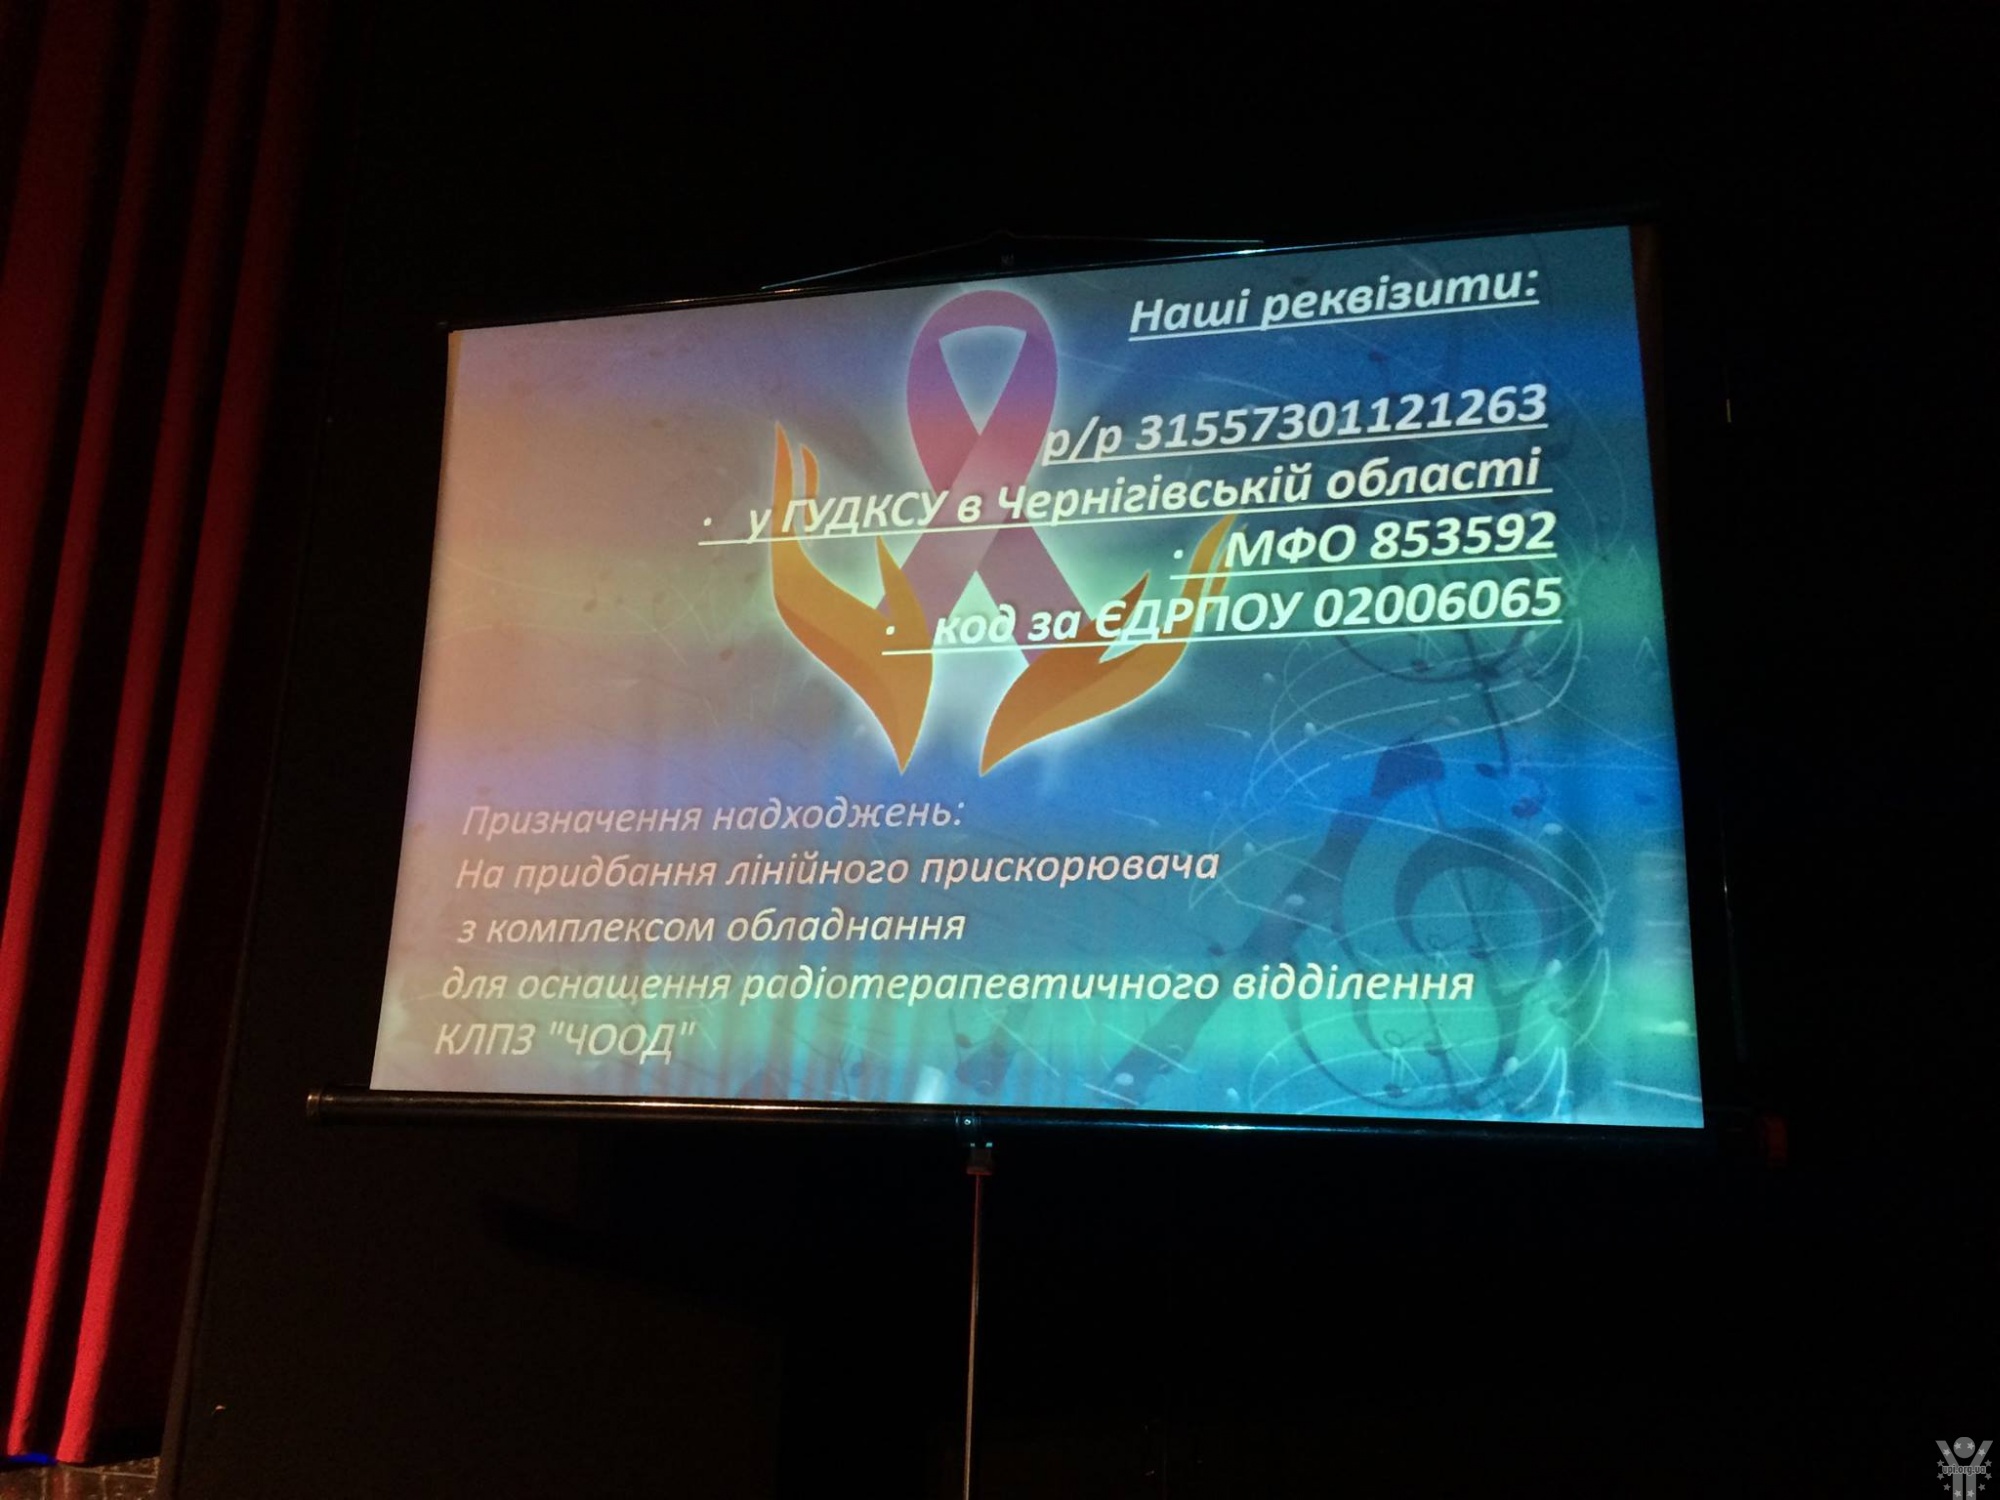 Благодійний марафон «Промінь надії» зібрав майже 125 тис.грн на придбання лінійного прискорювача для онкохворих